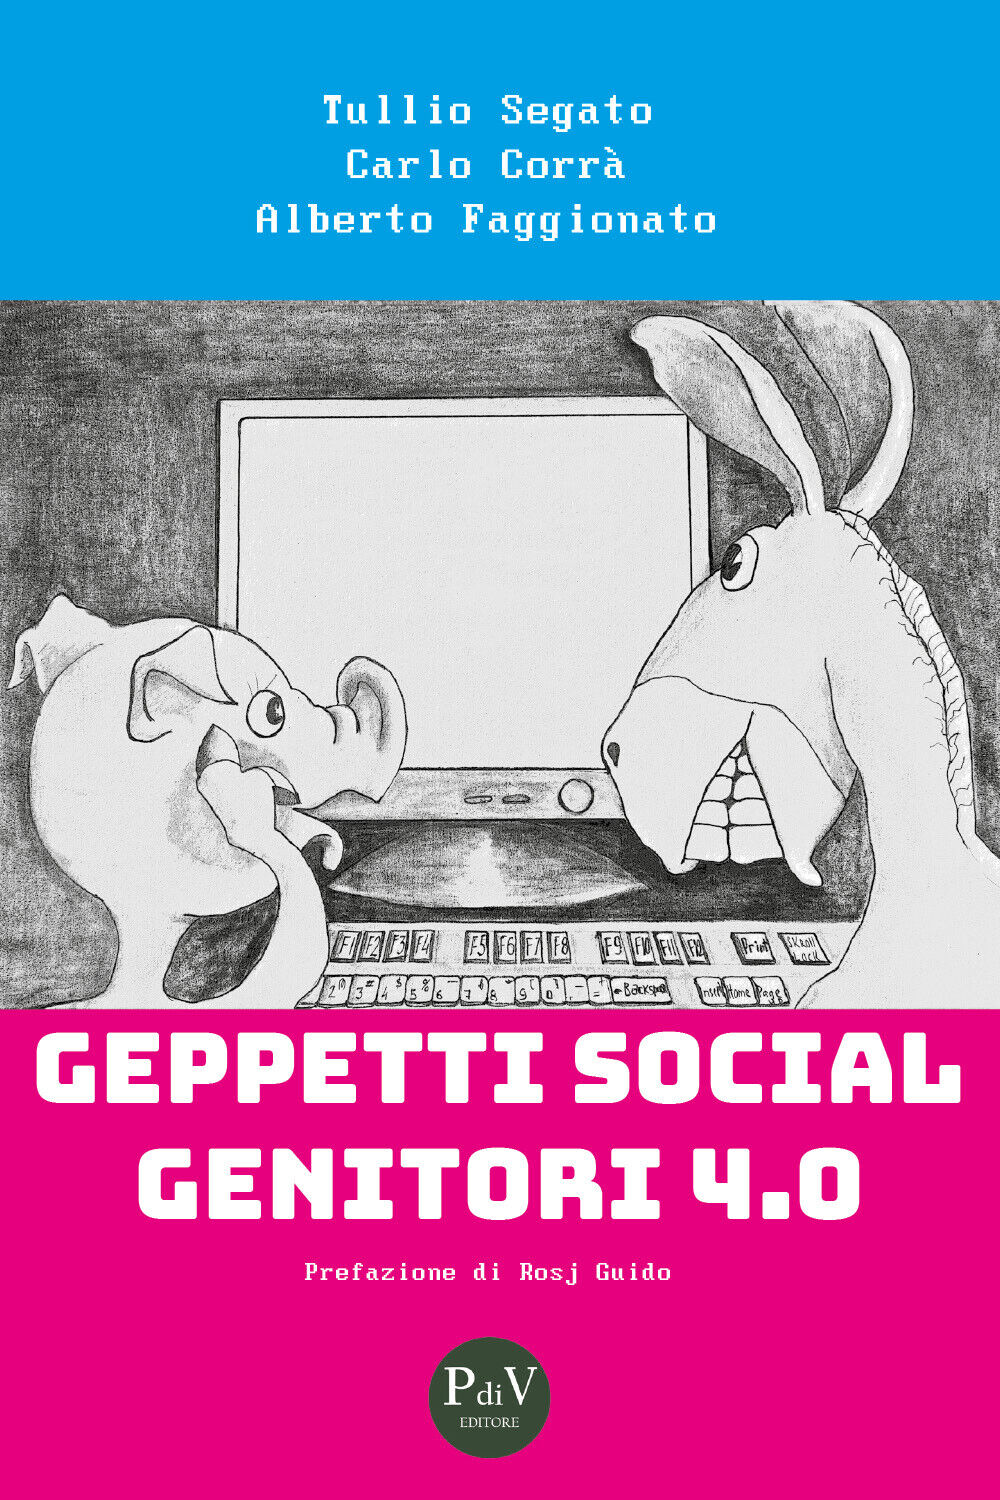 Geppetti social genitori 4.0 di Tullio Segato, Carlo Corr?, Alberto Faggionato, 